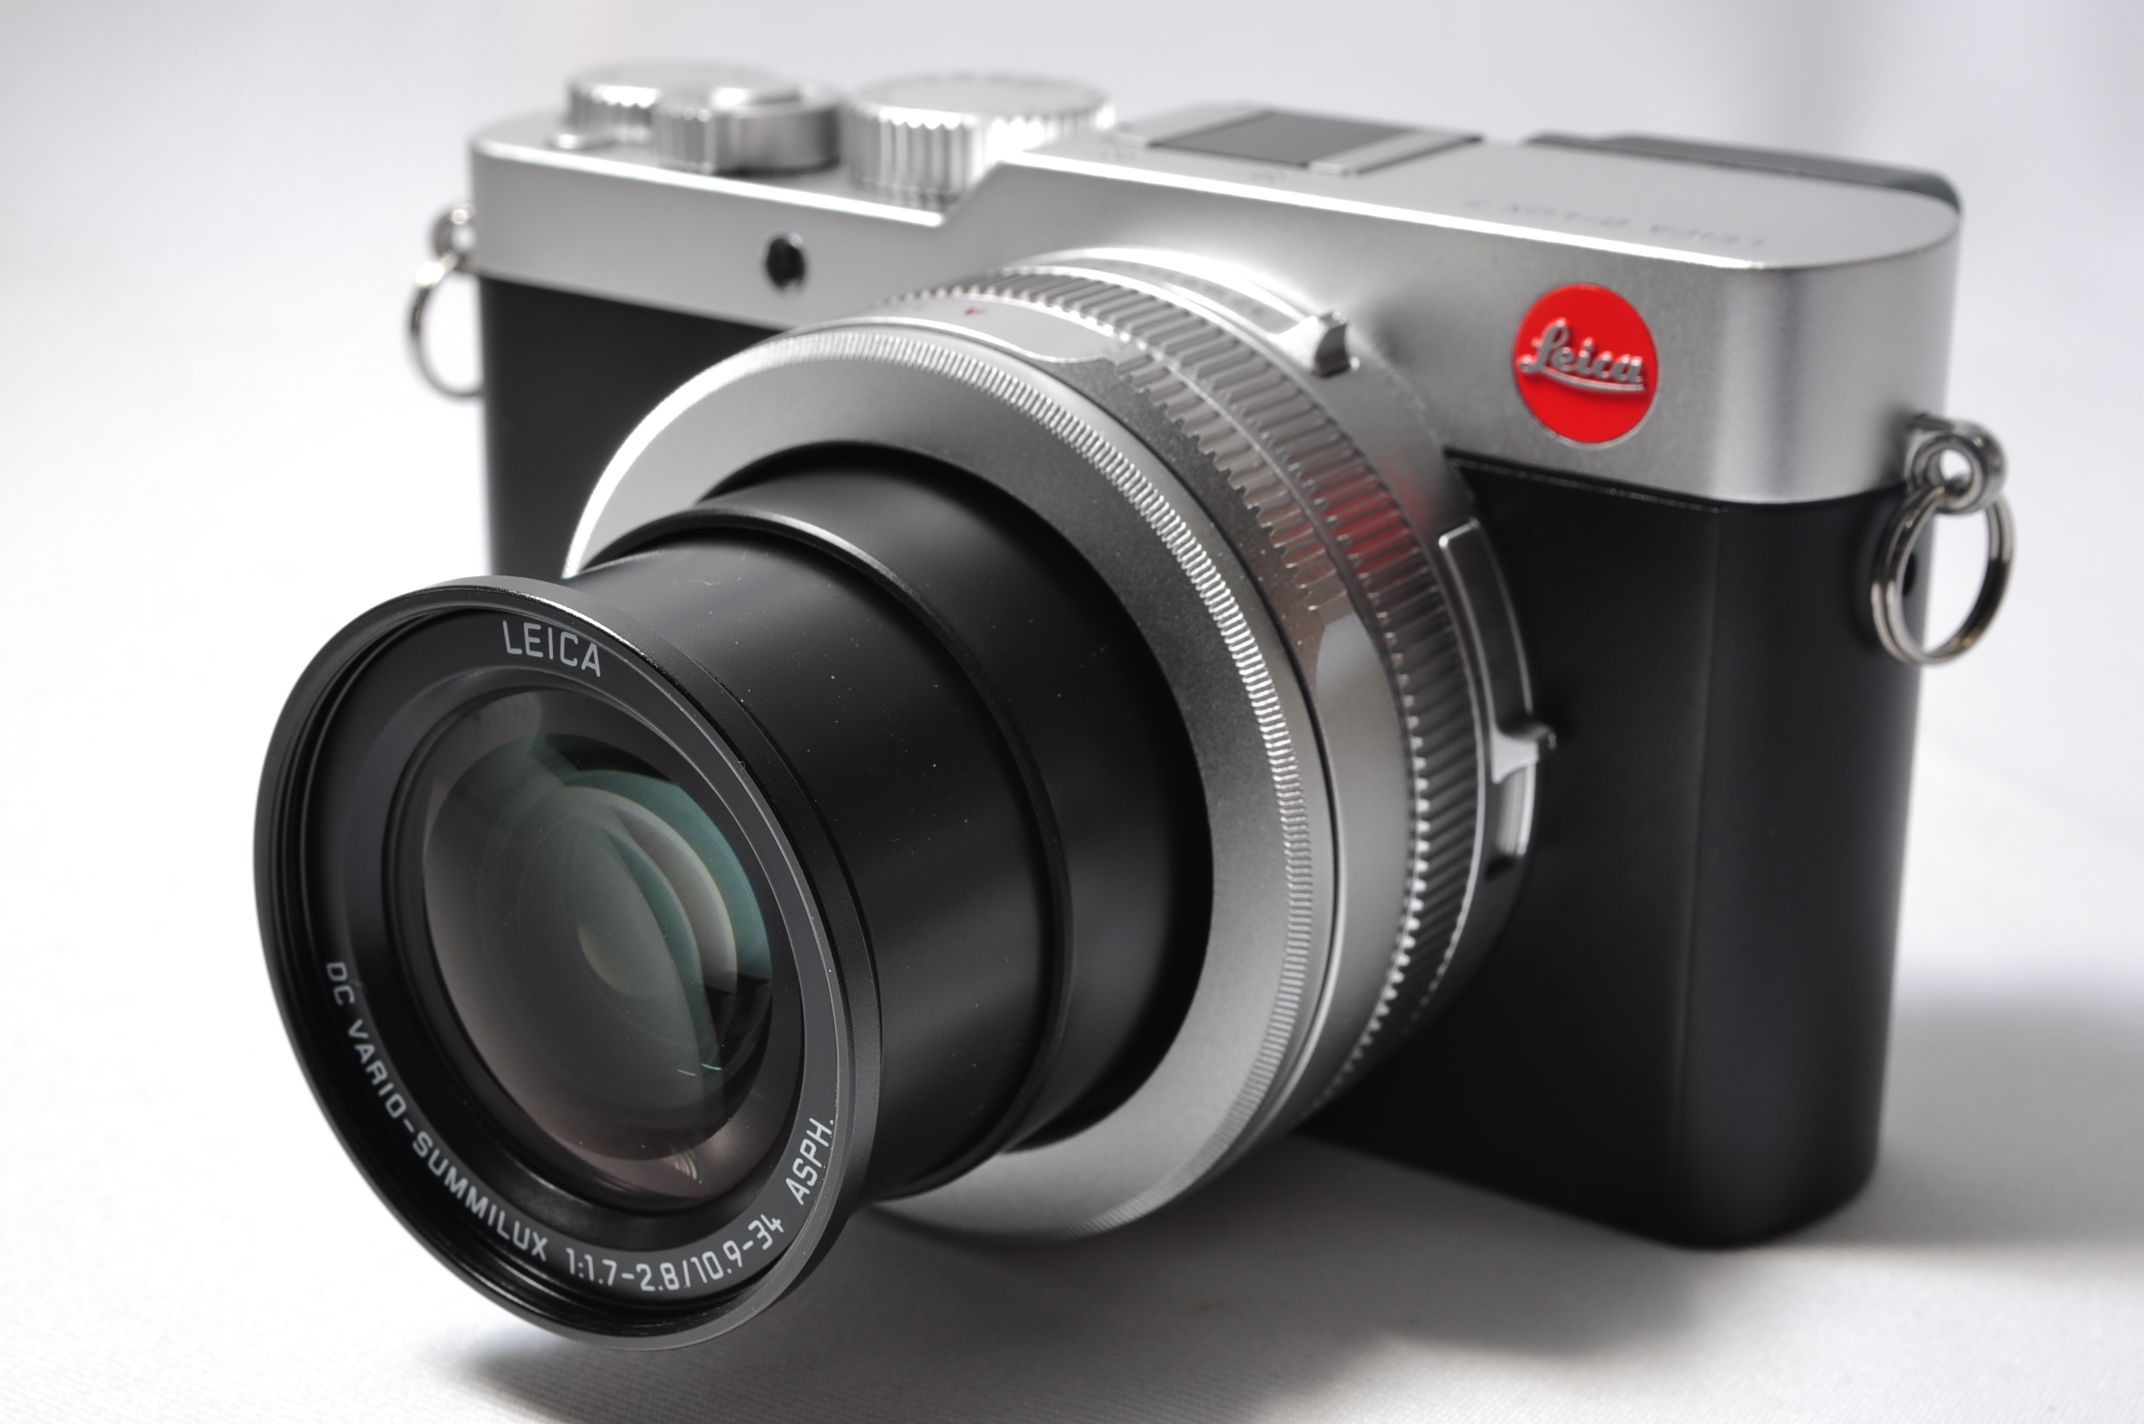 【新規店オープン記念最大2000円オフクーポン配布中】【中古】 Leica ライカ D-LUX7 大型センサー搭載デジタルカメラ SDカード付き  １ヶ月保証 カメラのヒデヨシ 